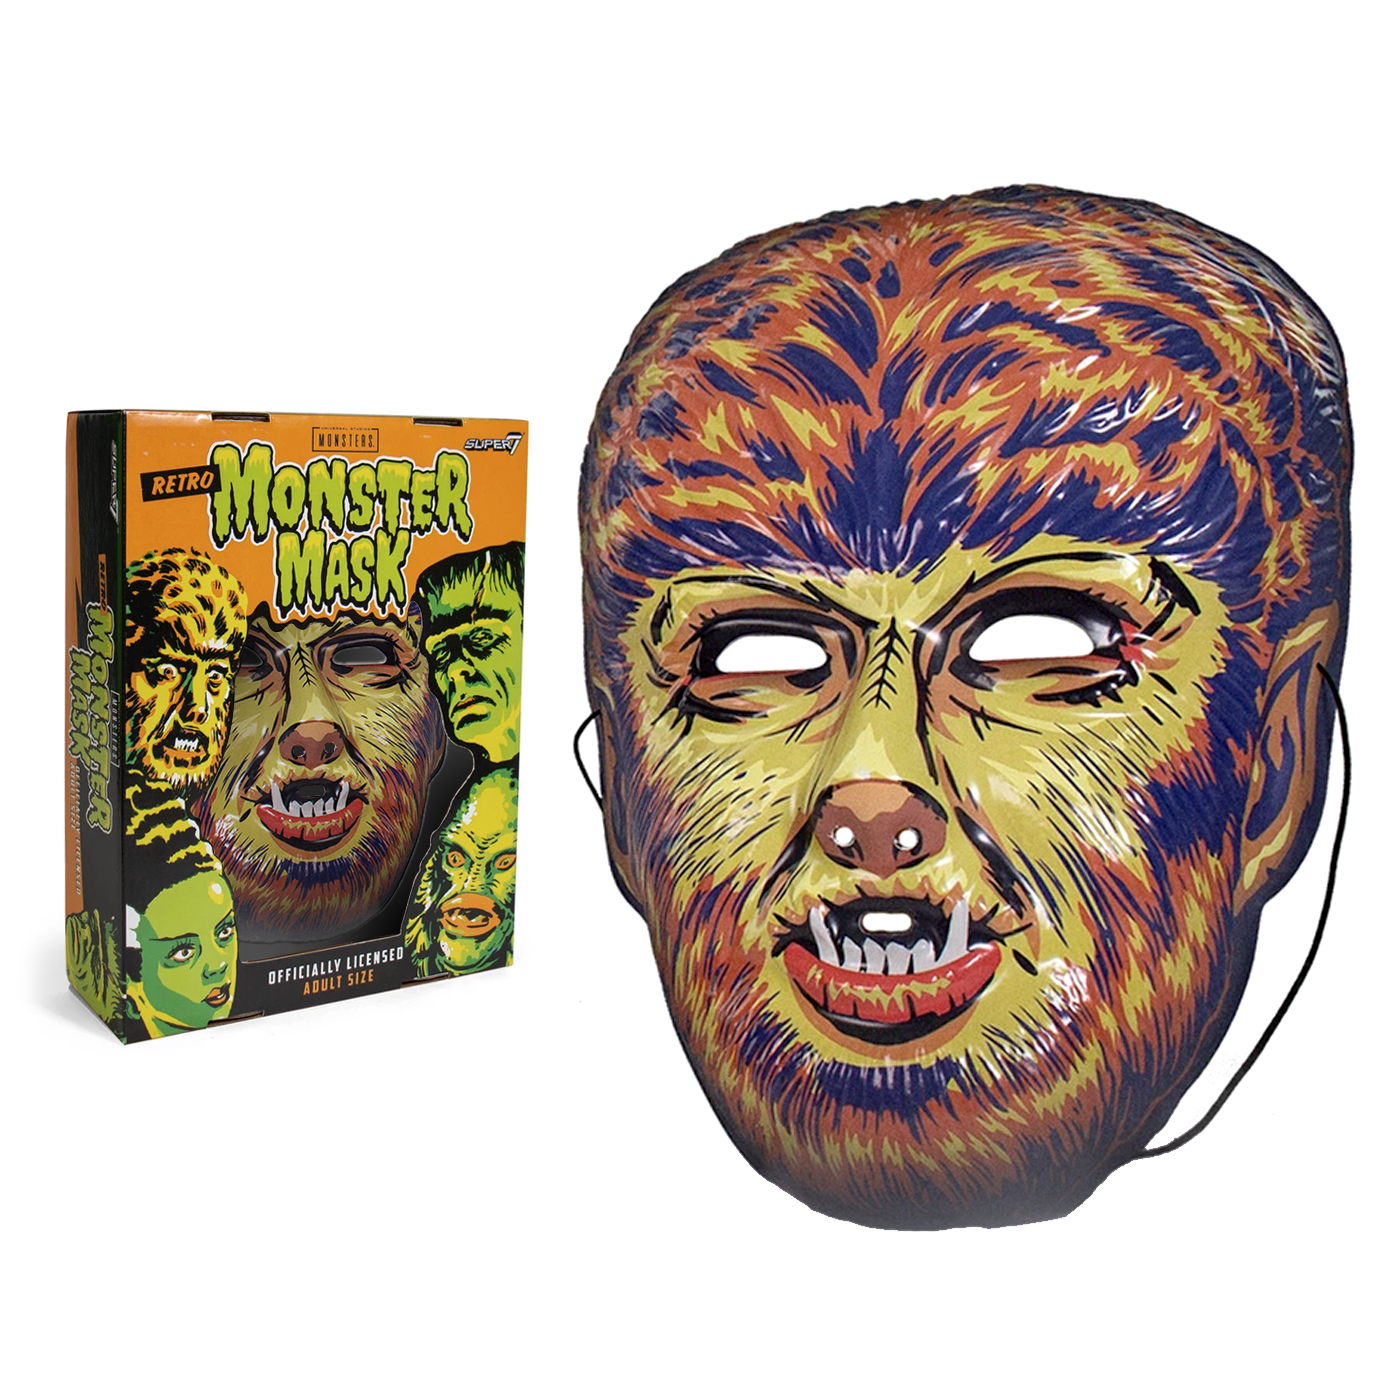 Universal Monsters Mask - Wolf Man (Yellow)